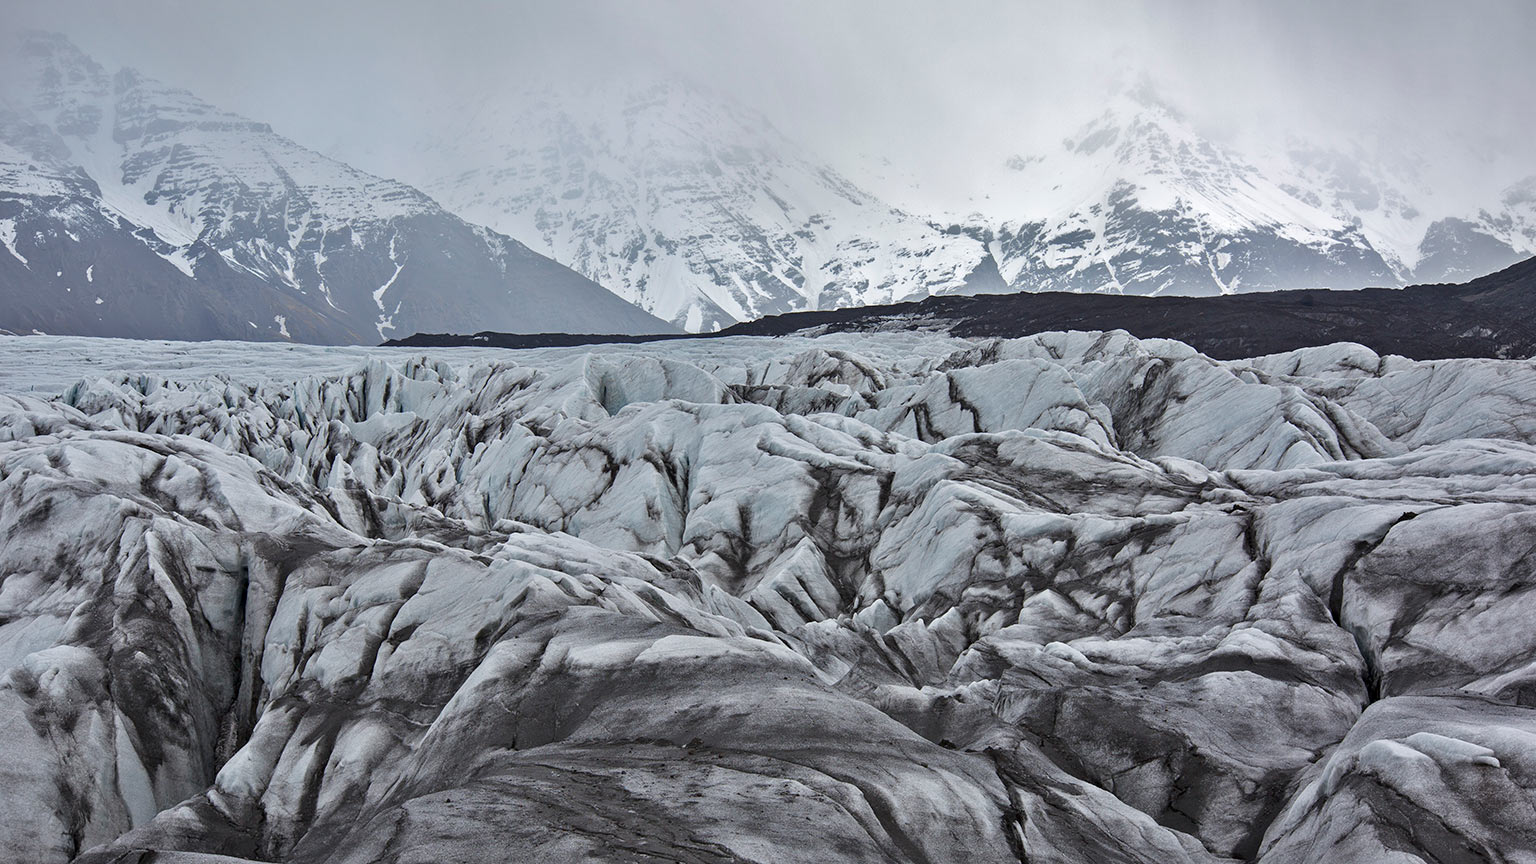 Iceland-Vik-Svinafellsjokull-Glacier-Ice-Landscape